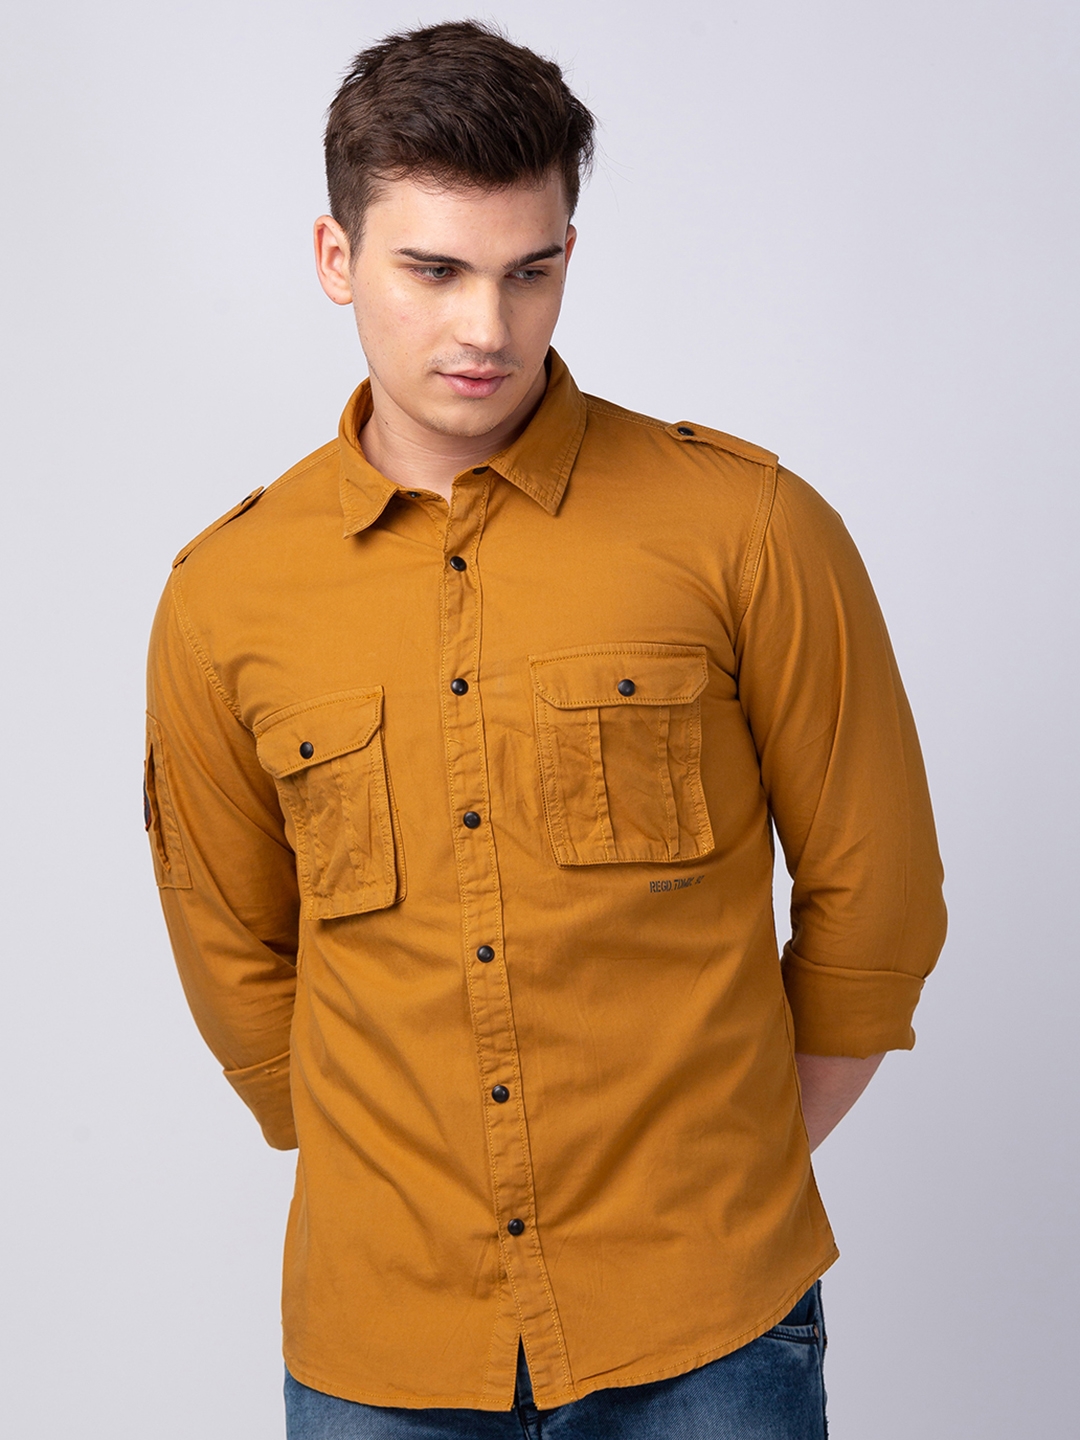 Spykar Brown Cotton Full Sleeve Plain Shirt For Men